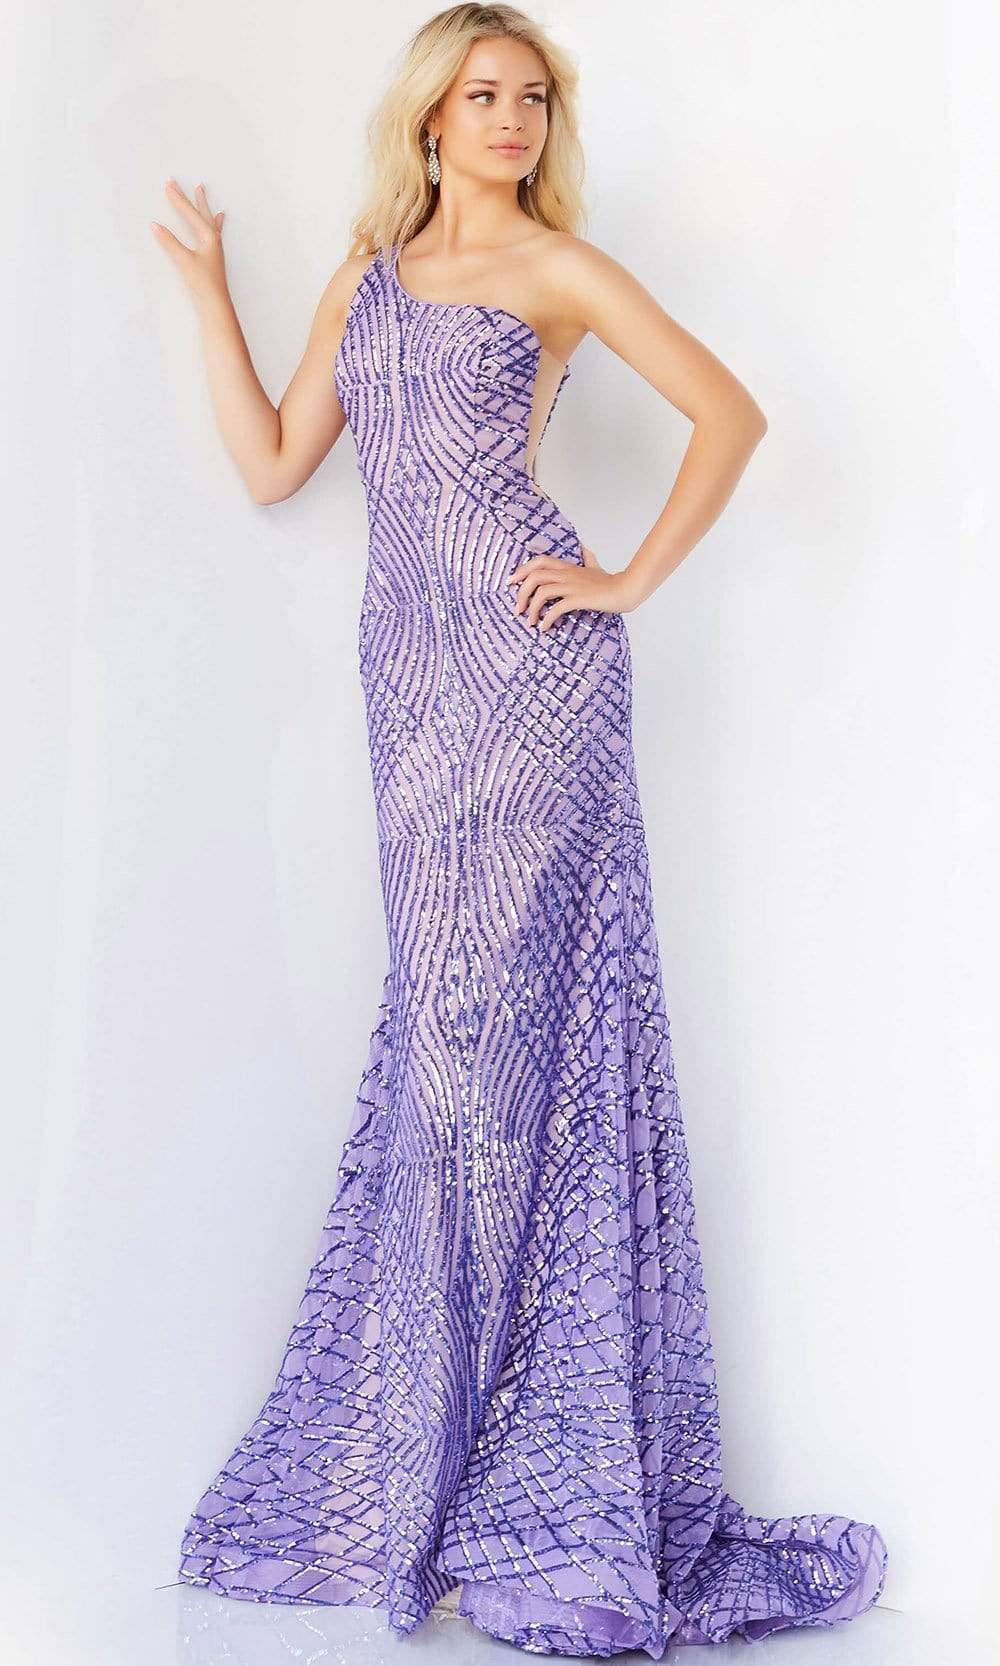 Jovani - 06517 One Shoulder Sequin Embellished Dress Prom Dresses 00 / Lilac